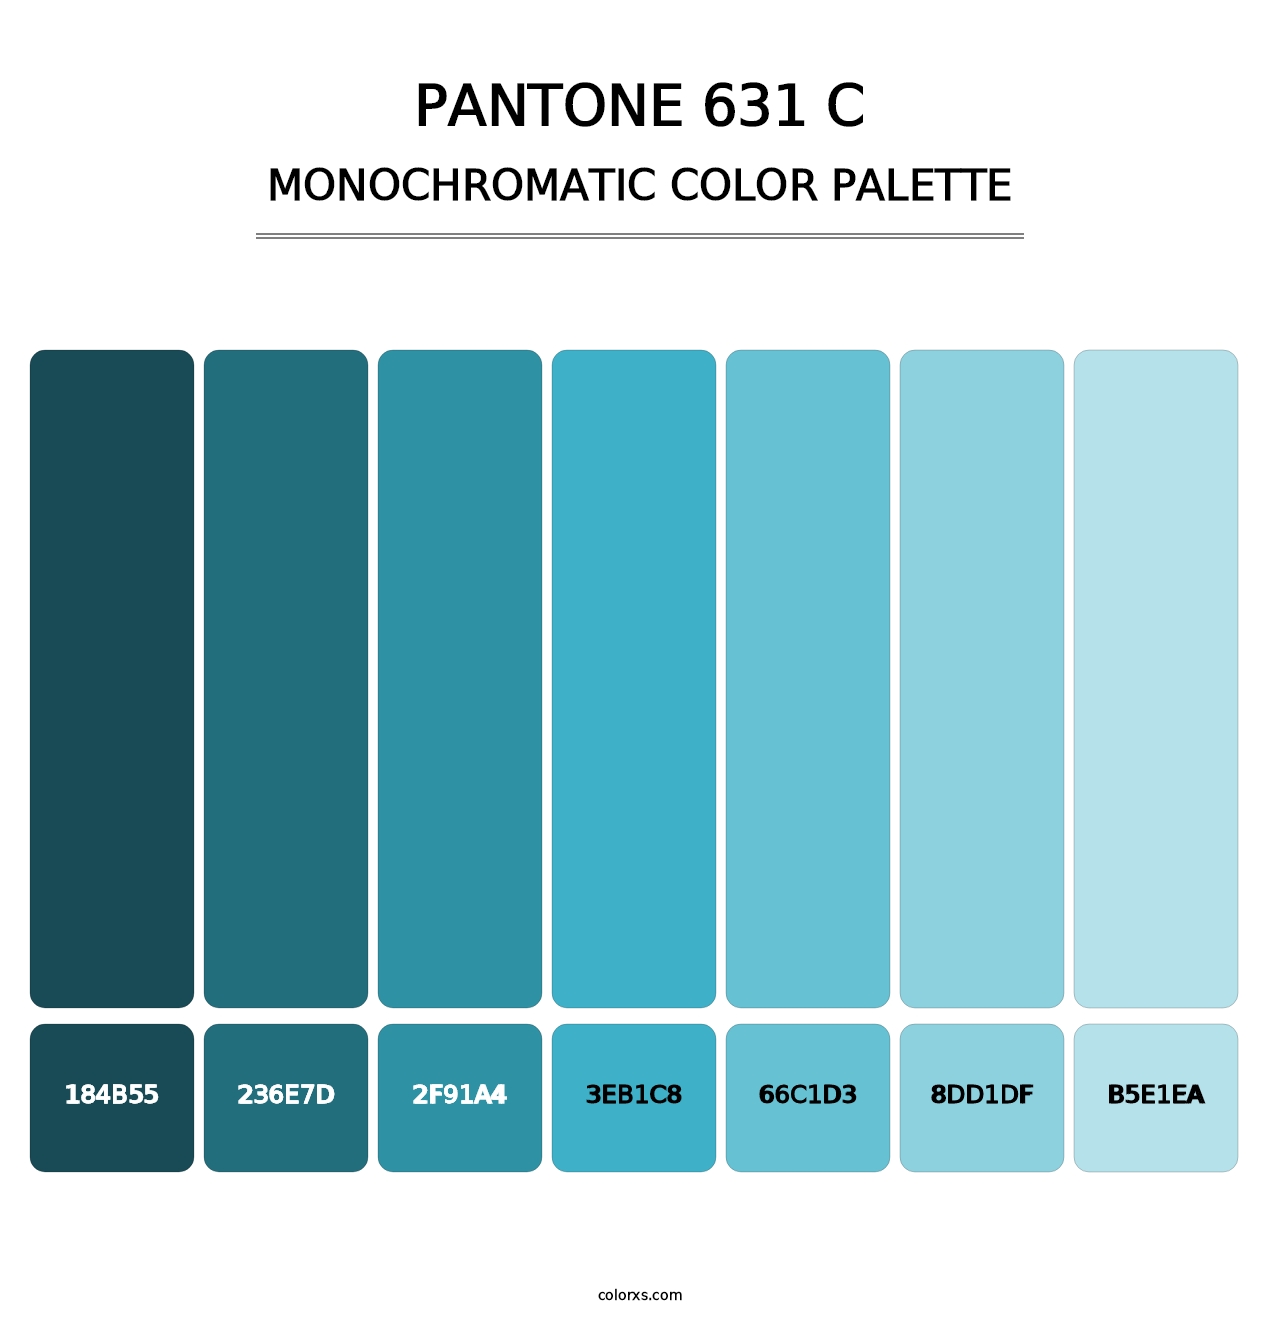 PANTONE 631 C - Monochromatic Color Palette